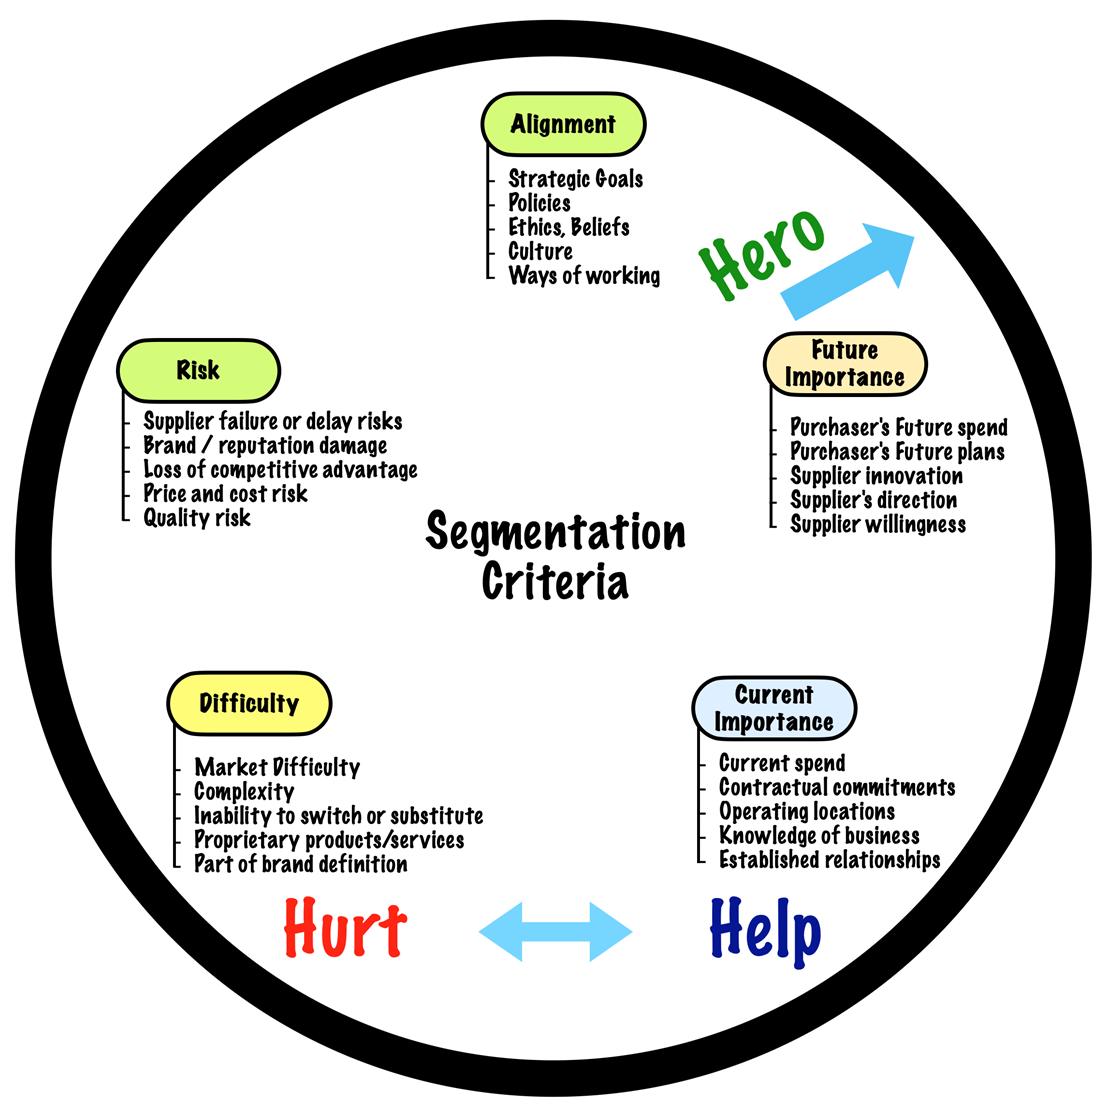 The generic segmentation criteria for supplier segmentation